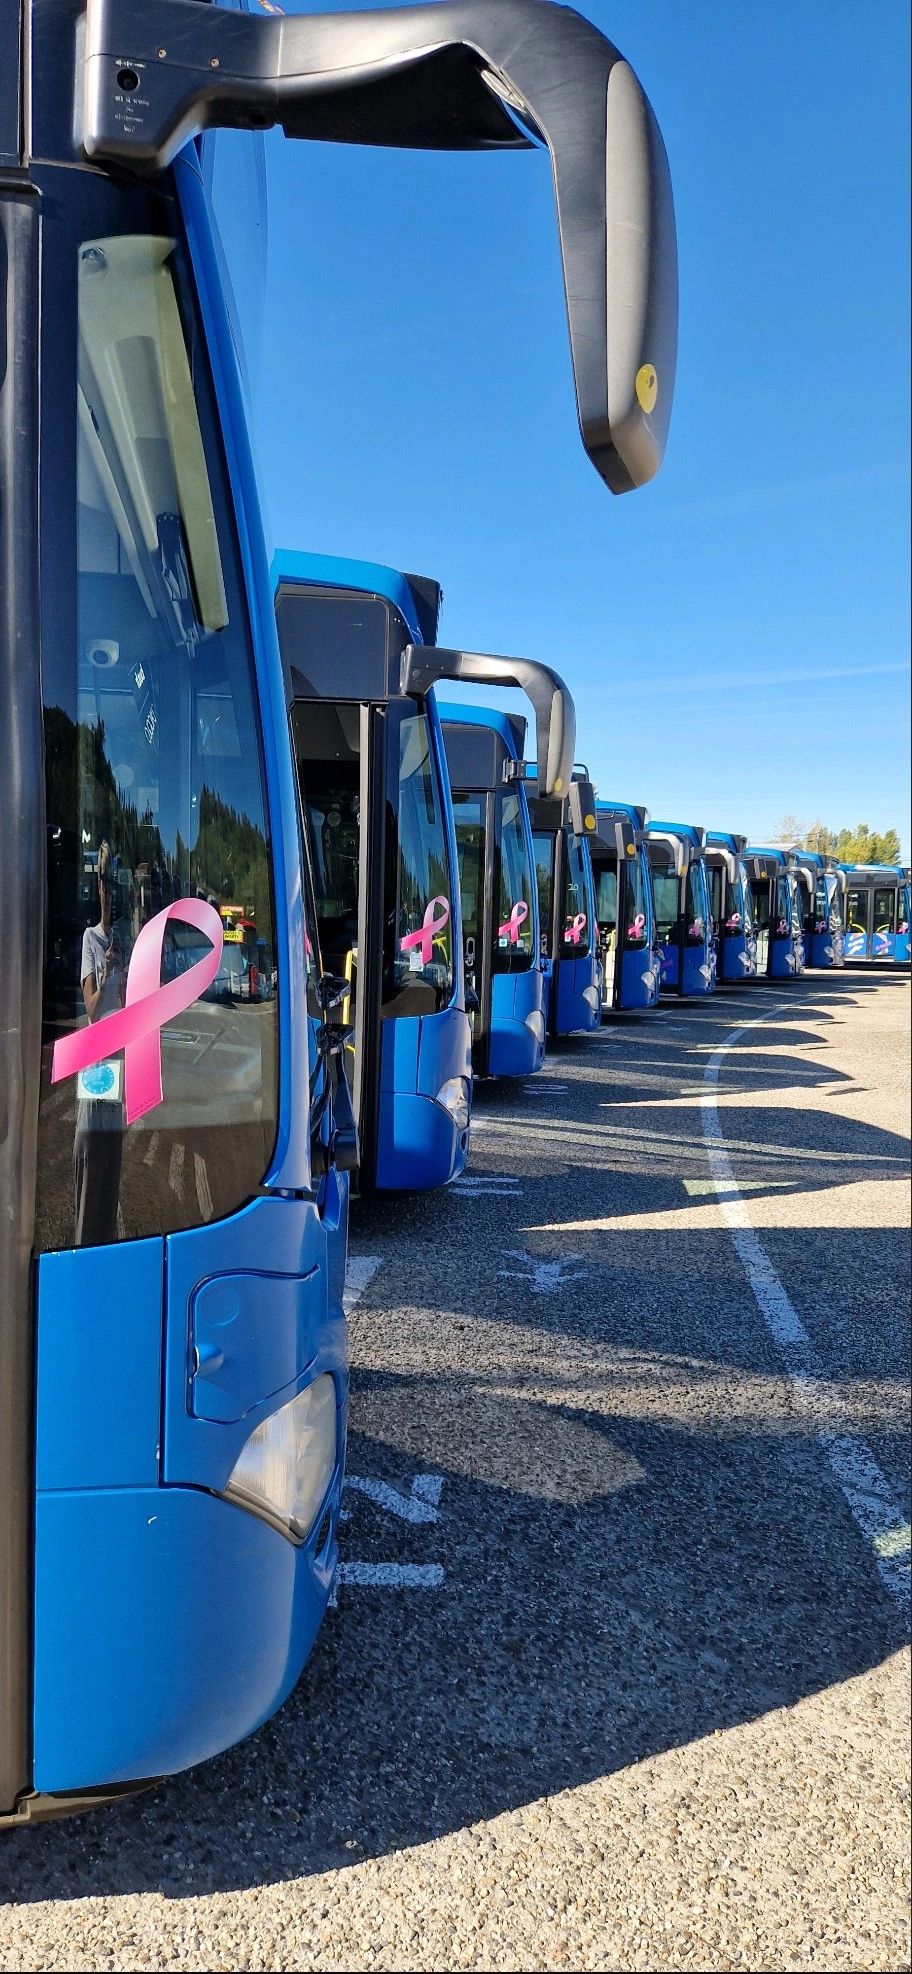 Photographie de bus avec un ruban rose